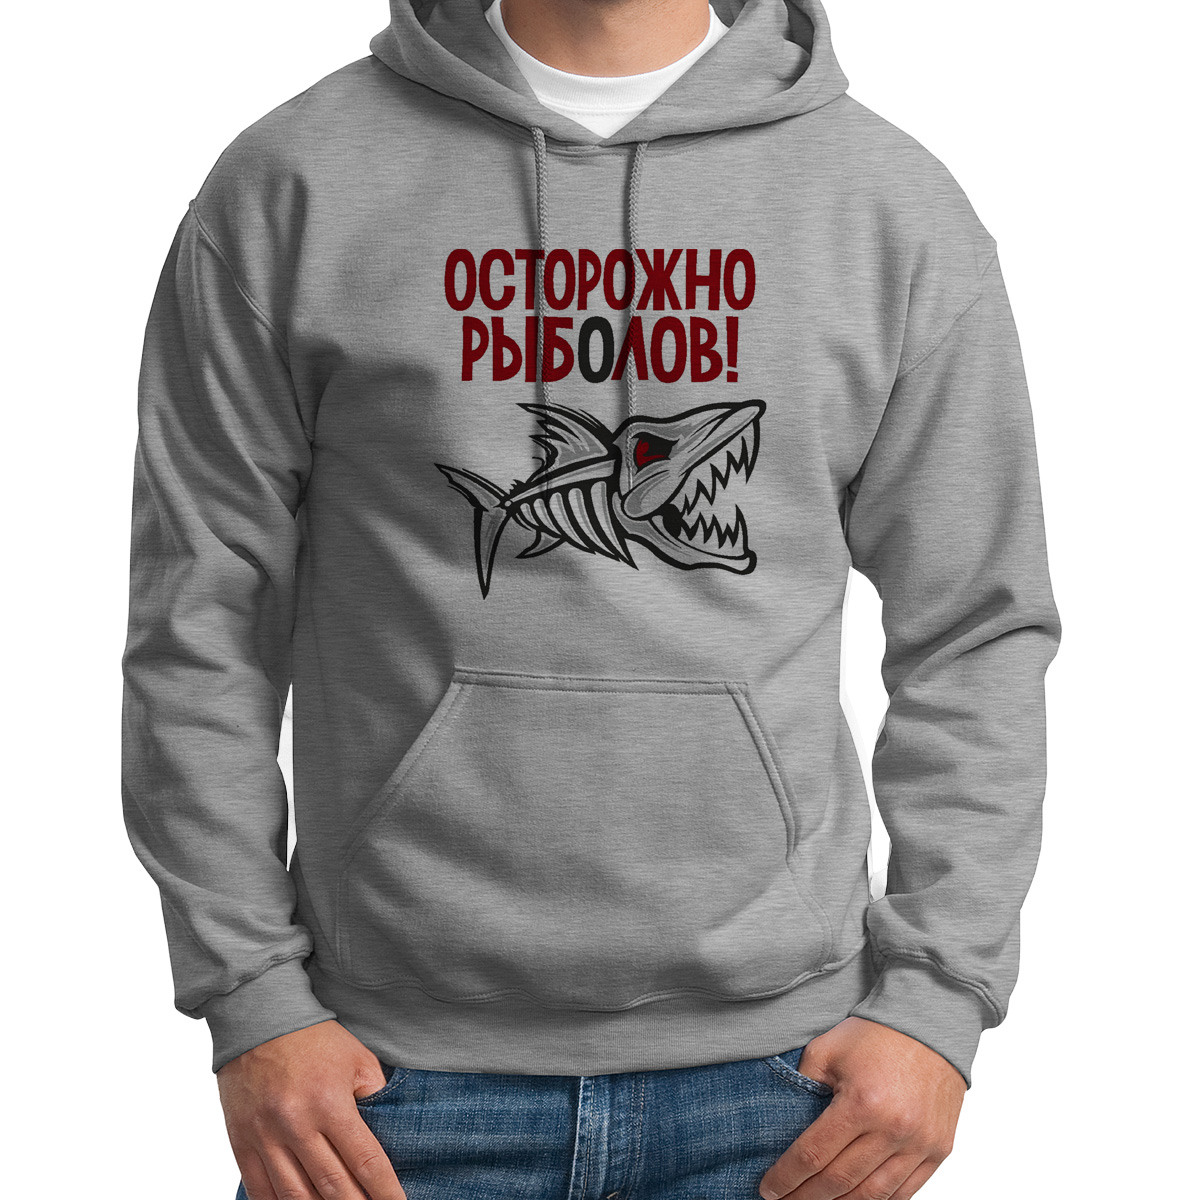 фото Худи унисекс coolpodarok рыбалка осторожно рыболов белое 48 ru